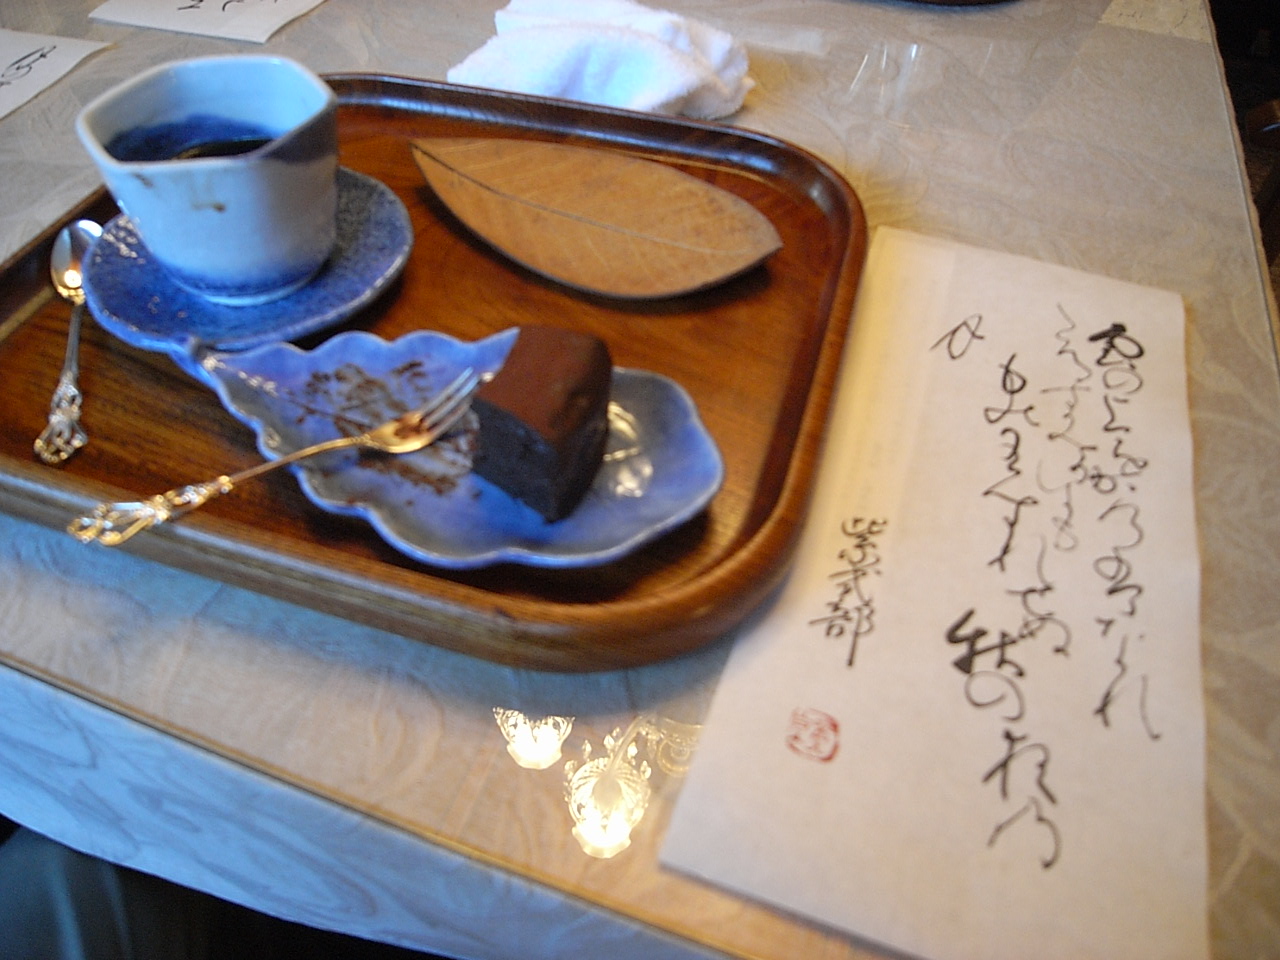 吉田山荘でのお茶 by 古橋